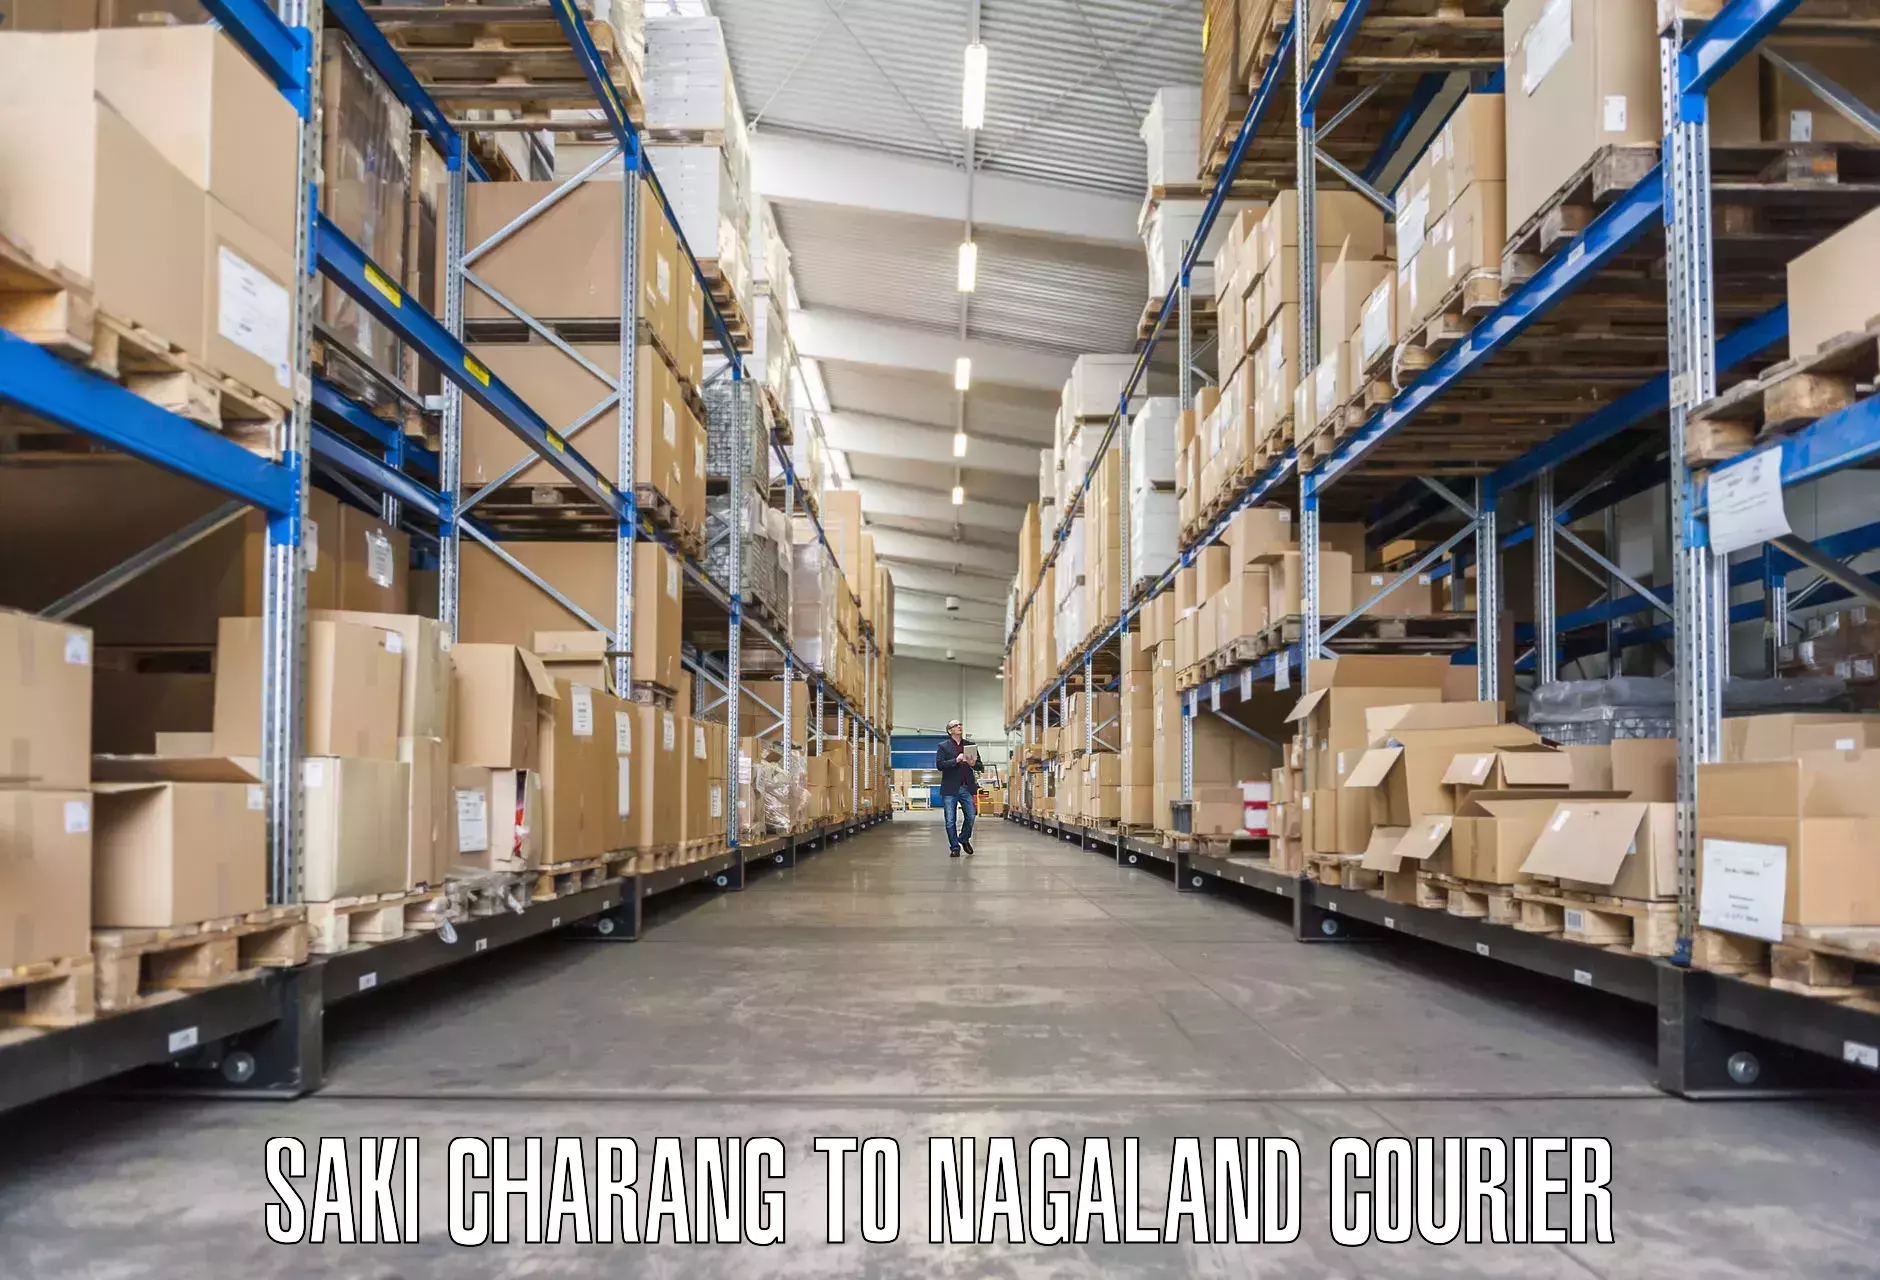 Professional furniture movers Saki Charang to Nagaland